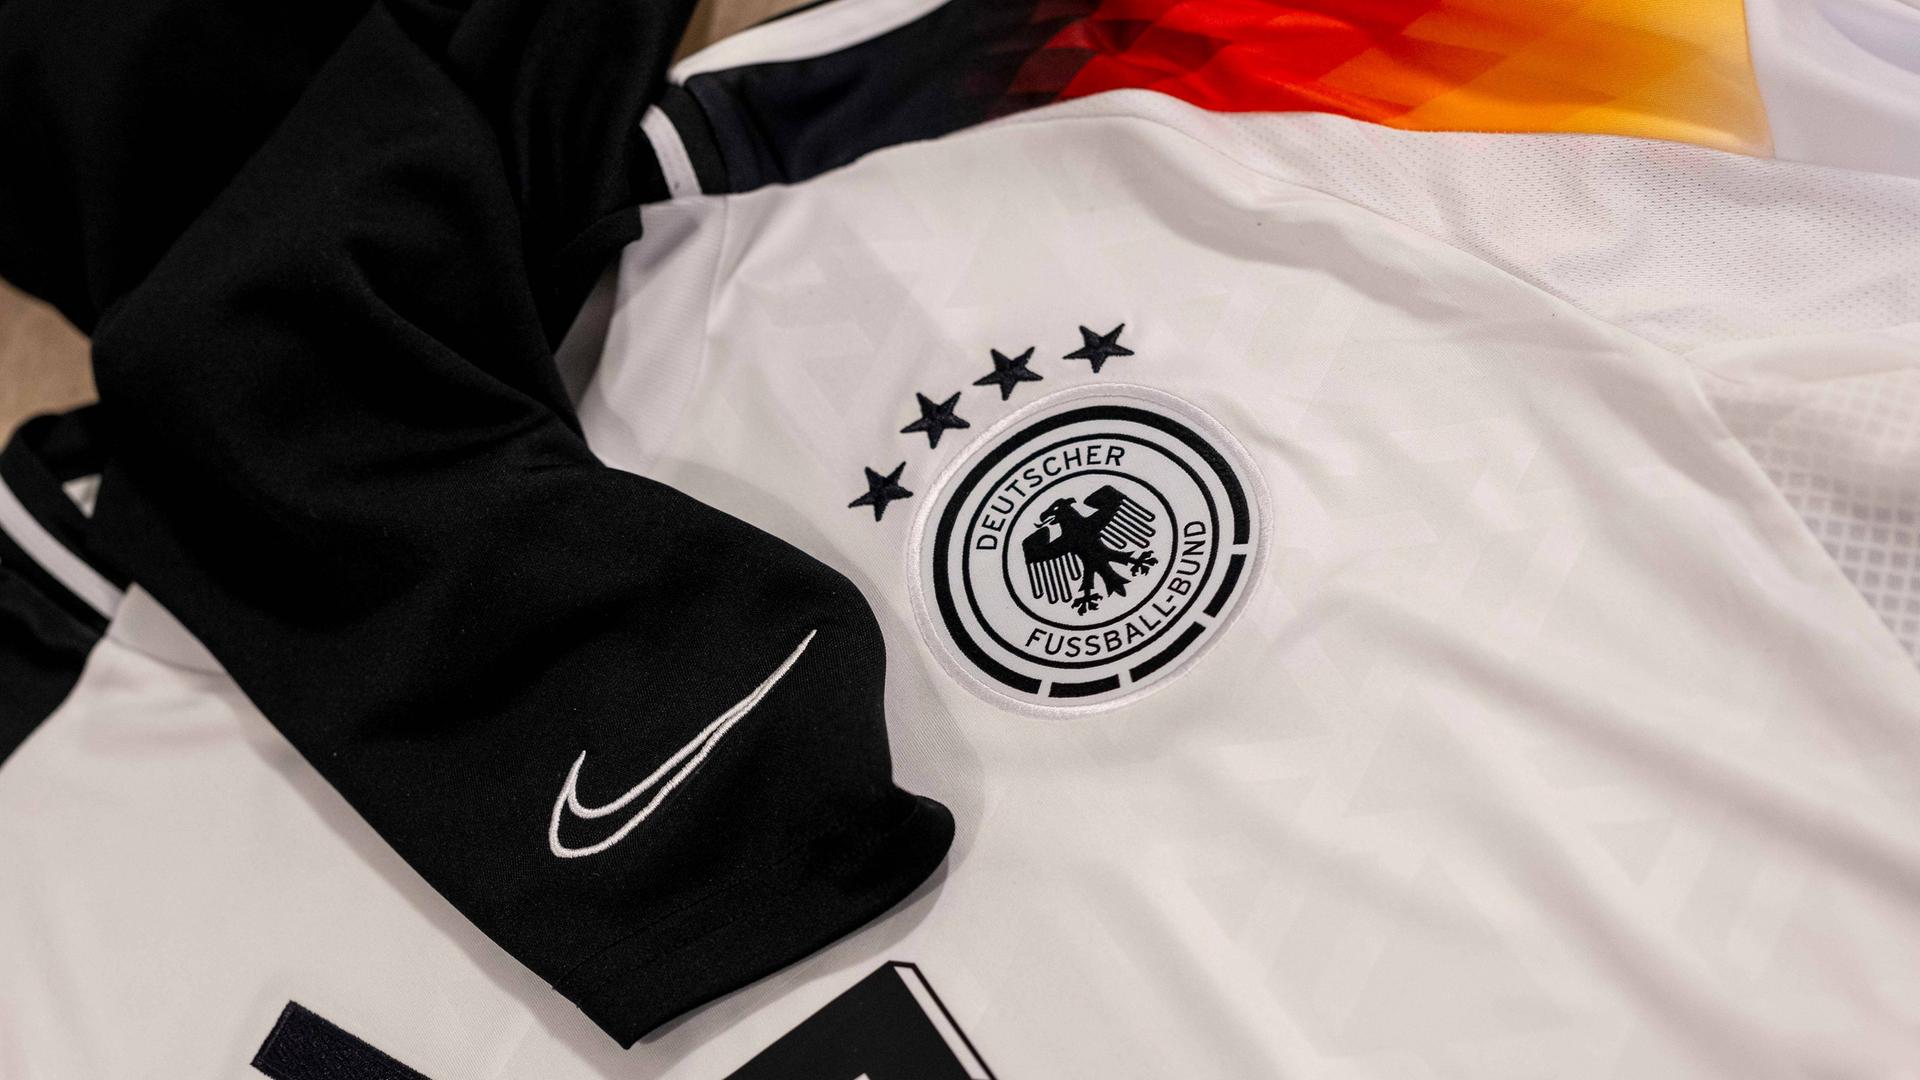 Ein Fußball-Trikot mit dem Nike-Logo und ein Fußball-Trikot mit dem Adidas-Logo liegen nebeneinander.